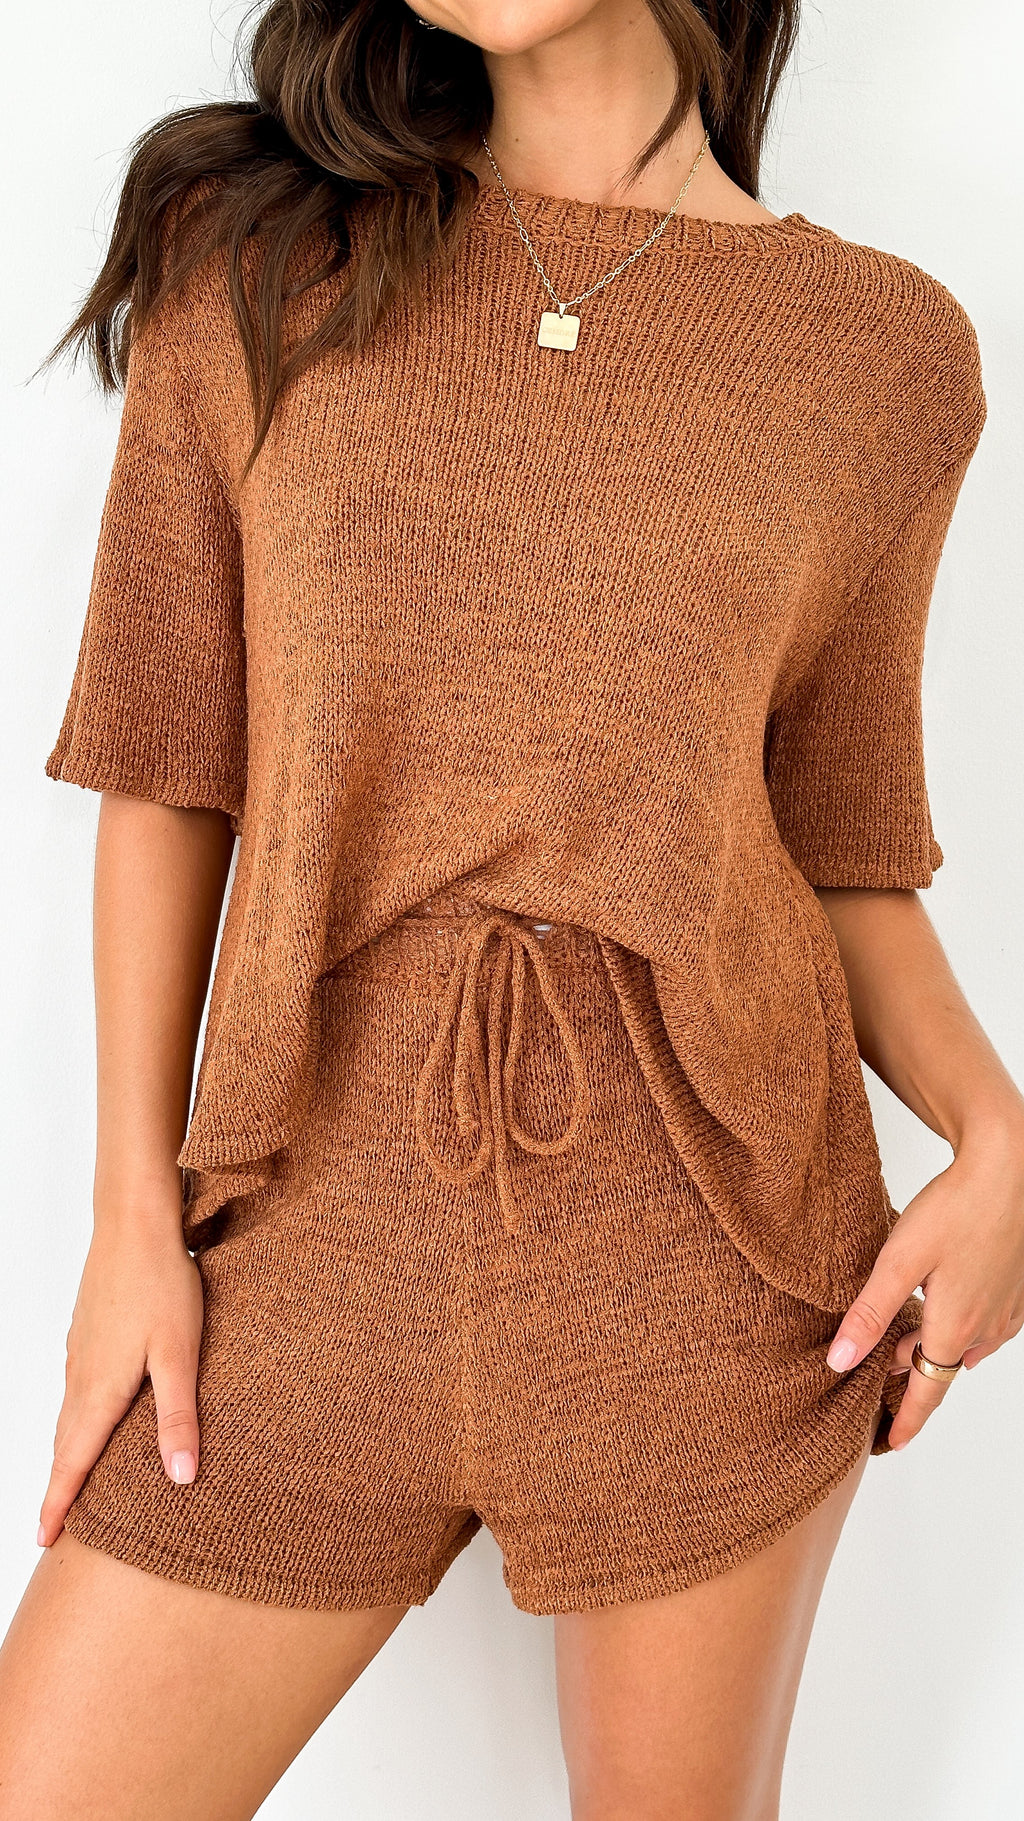 Habiba T-Shirt and Shorts Set - Brown Knit